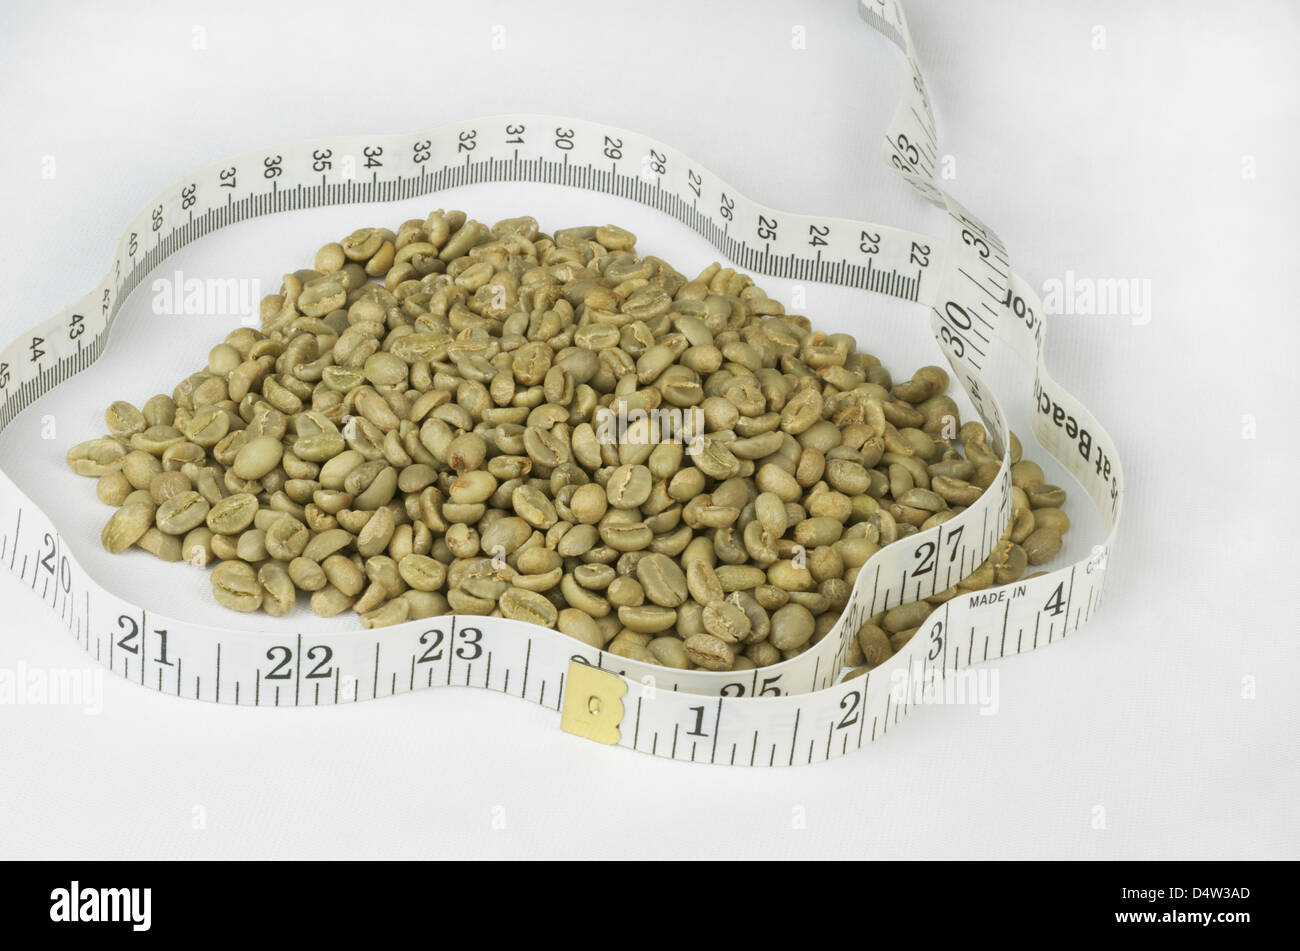 Les grains de café vert avec un ruban blanc qui les entourent, pour représenter la perte de poids Suppléments alimentaires dérivés de l'haricot. Banque D'Images